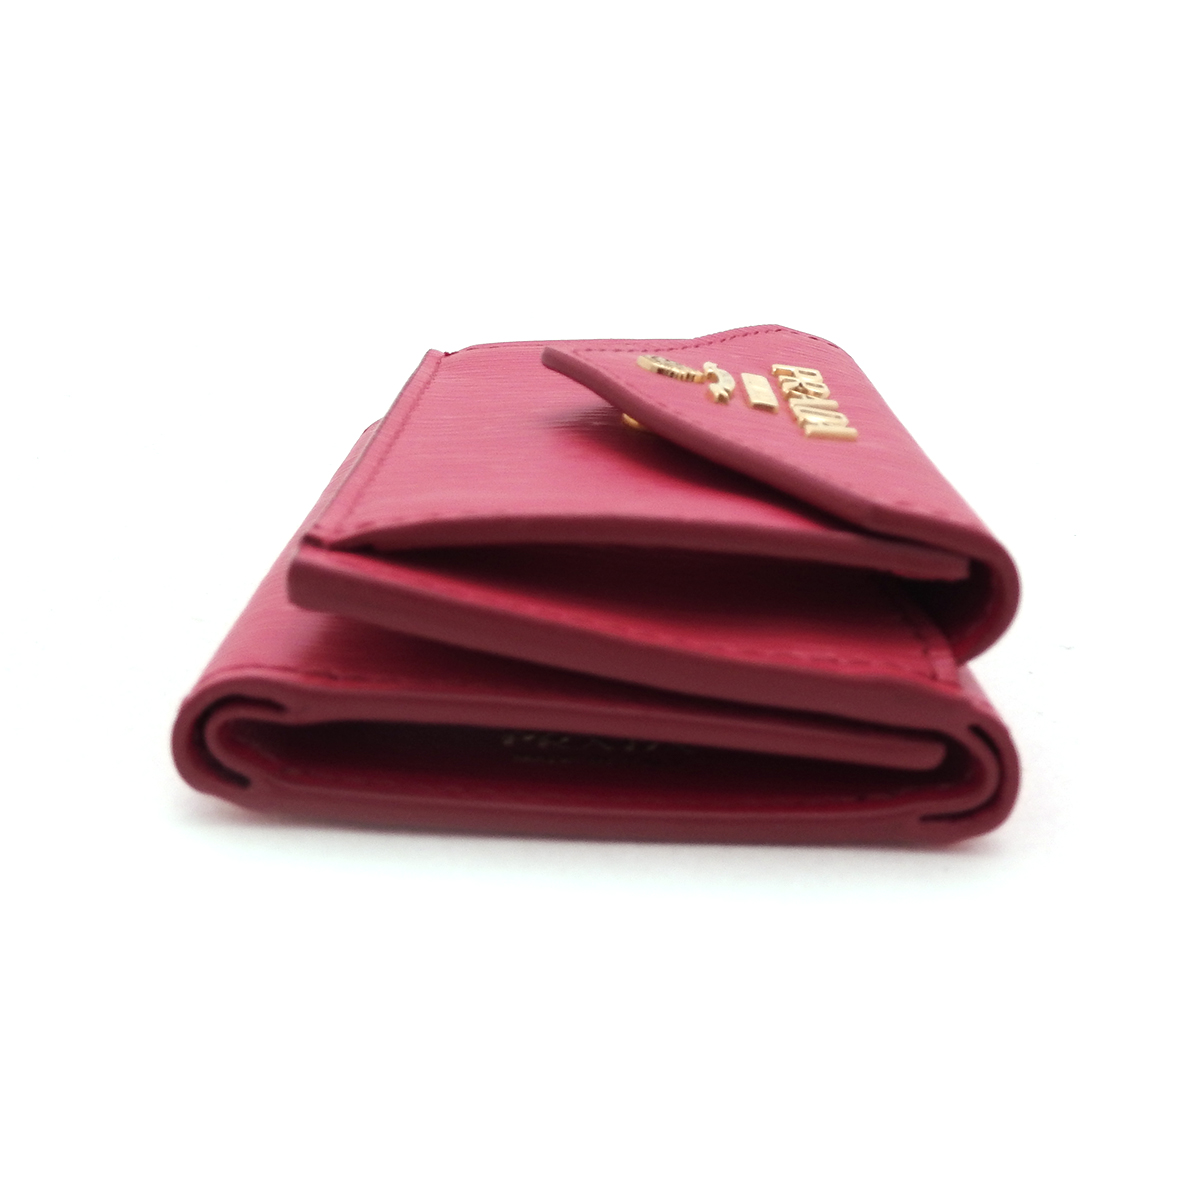 プラダ(PRADA) コンパクト三つ折り財布 1MH021 ピンク